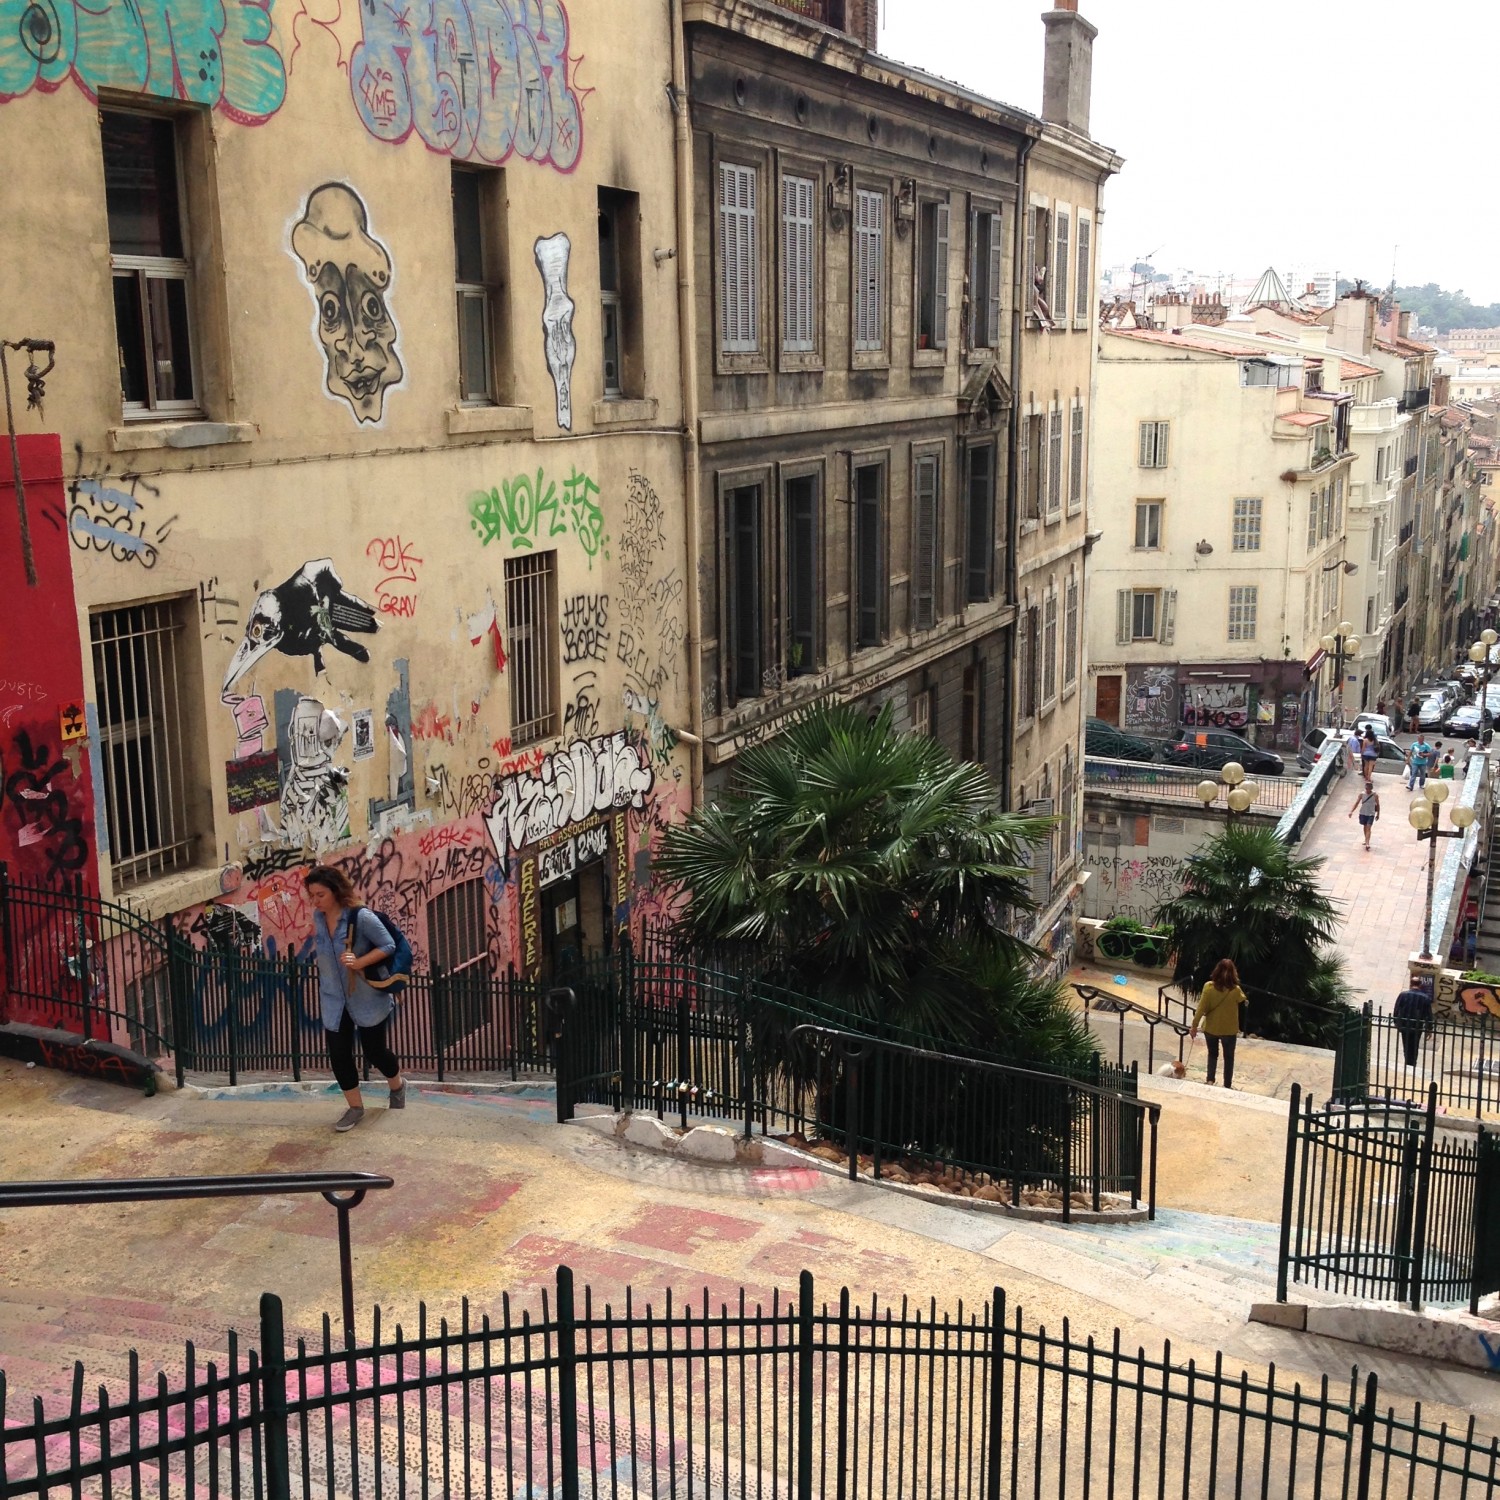 A trip to Marseille #choosemarseille | Flodeau.com